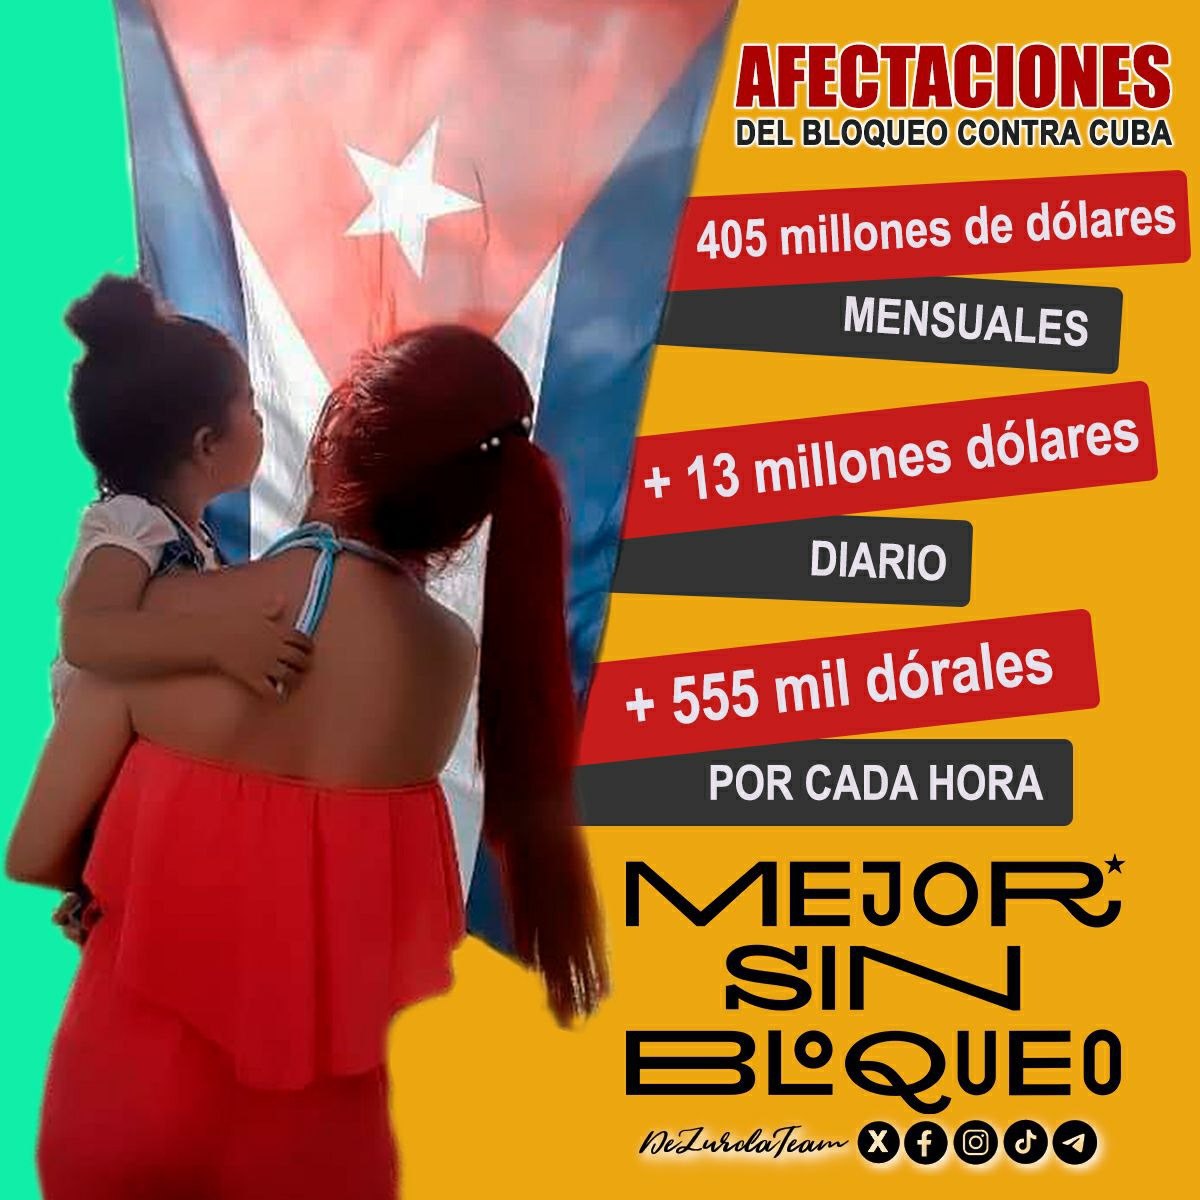 @DeZurdaTeam_ @ONU_es @DrRobertoMOjeda @CubaMINREX @AbelPrieto11 @siempreconcuba @EVilluendasC @PeoplesForumNYC @CallaWalsh @GloriaLaRiva @Robe_SanBlas Es hora de decir basta al bloqueo genocida impuesto contra Cuba. #MejorSinBloqueo #DeZurdaTeam